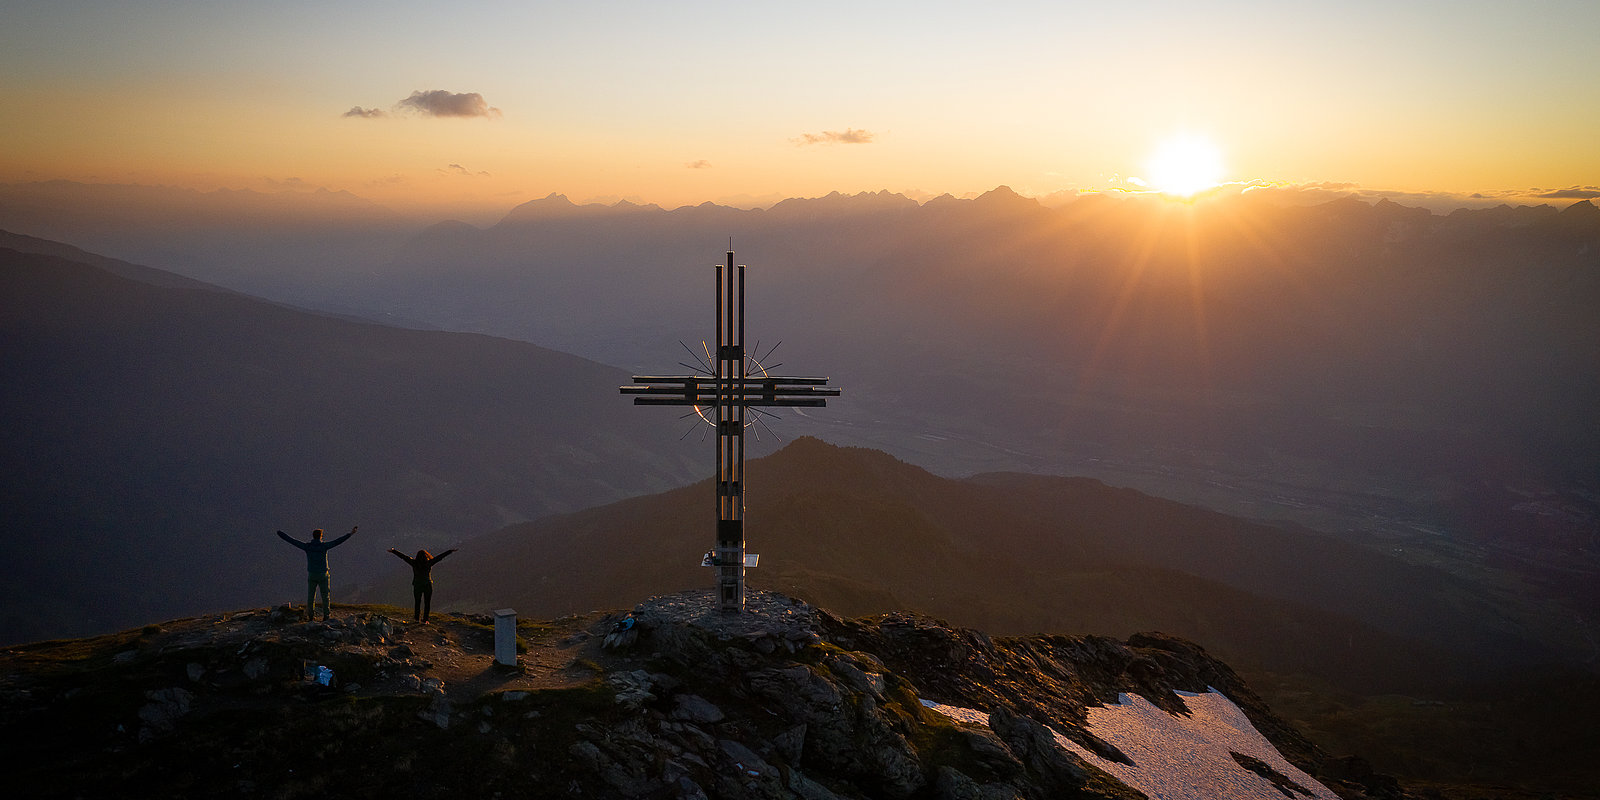 Gipfelkreuz in der Abendsonne, Fotograf: becknaphoto.com